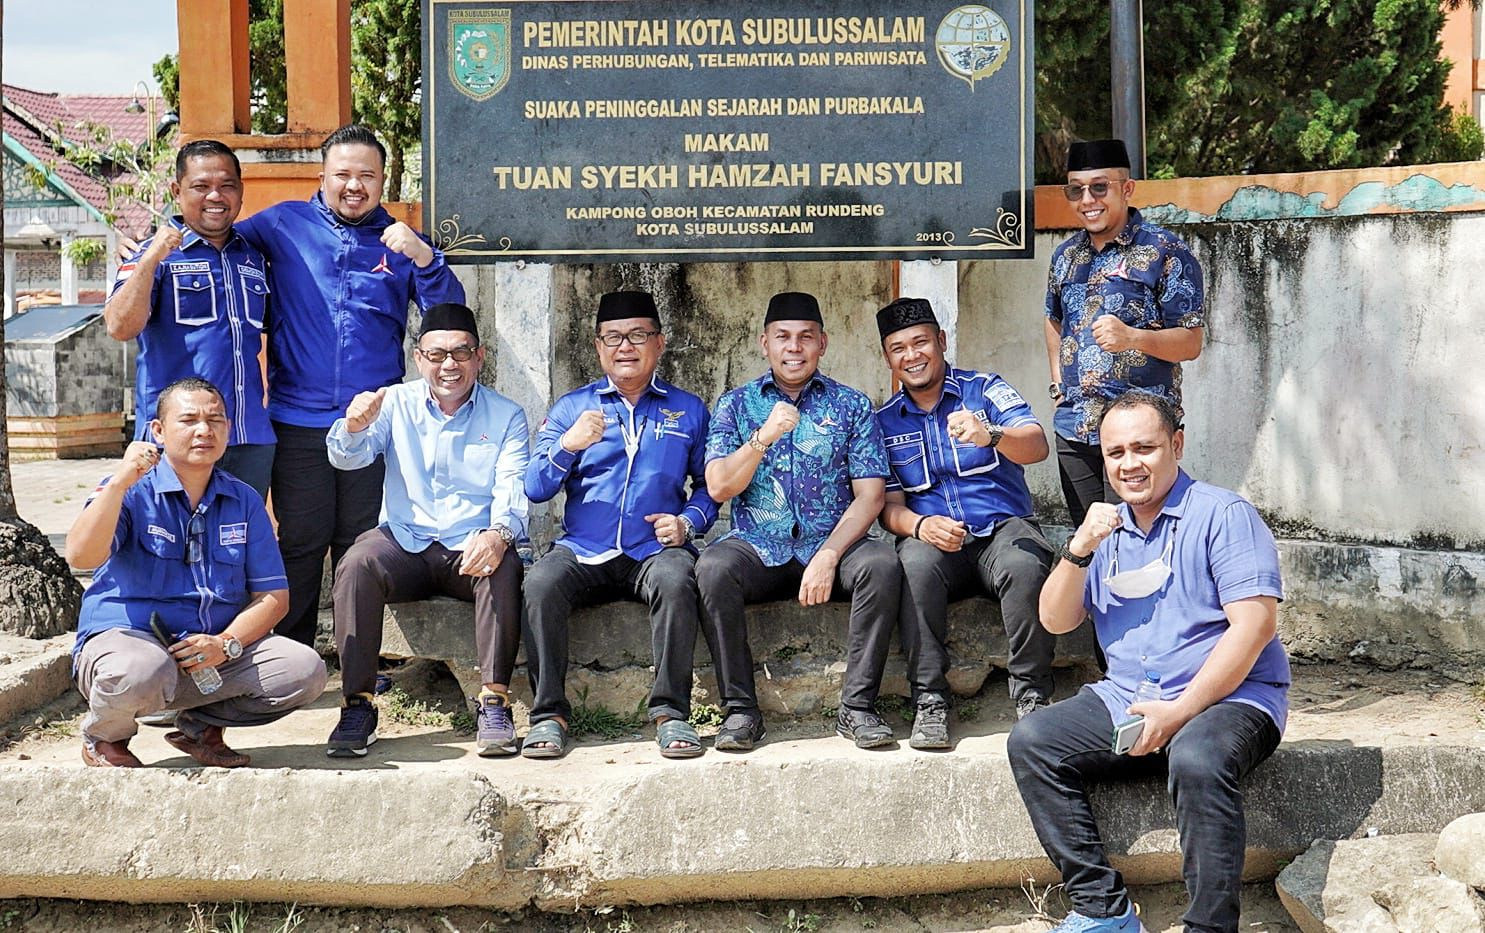 Hari terakhir Konsolidasi, Demokrat Aceh Ziarah Ke Makam Syeikh Hamzah Fansuri